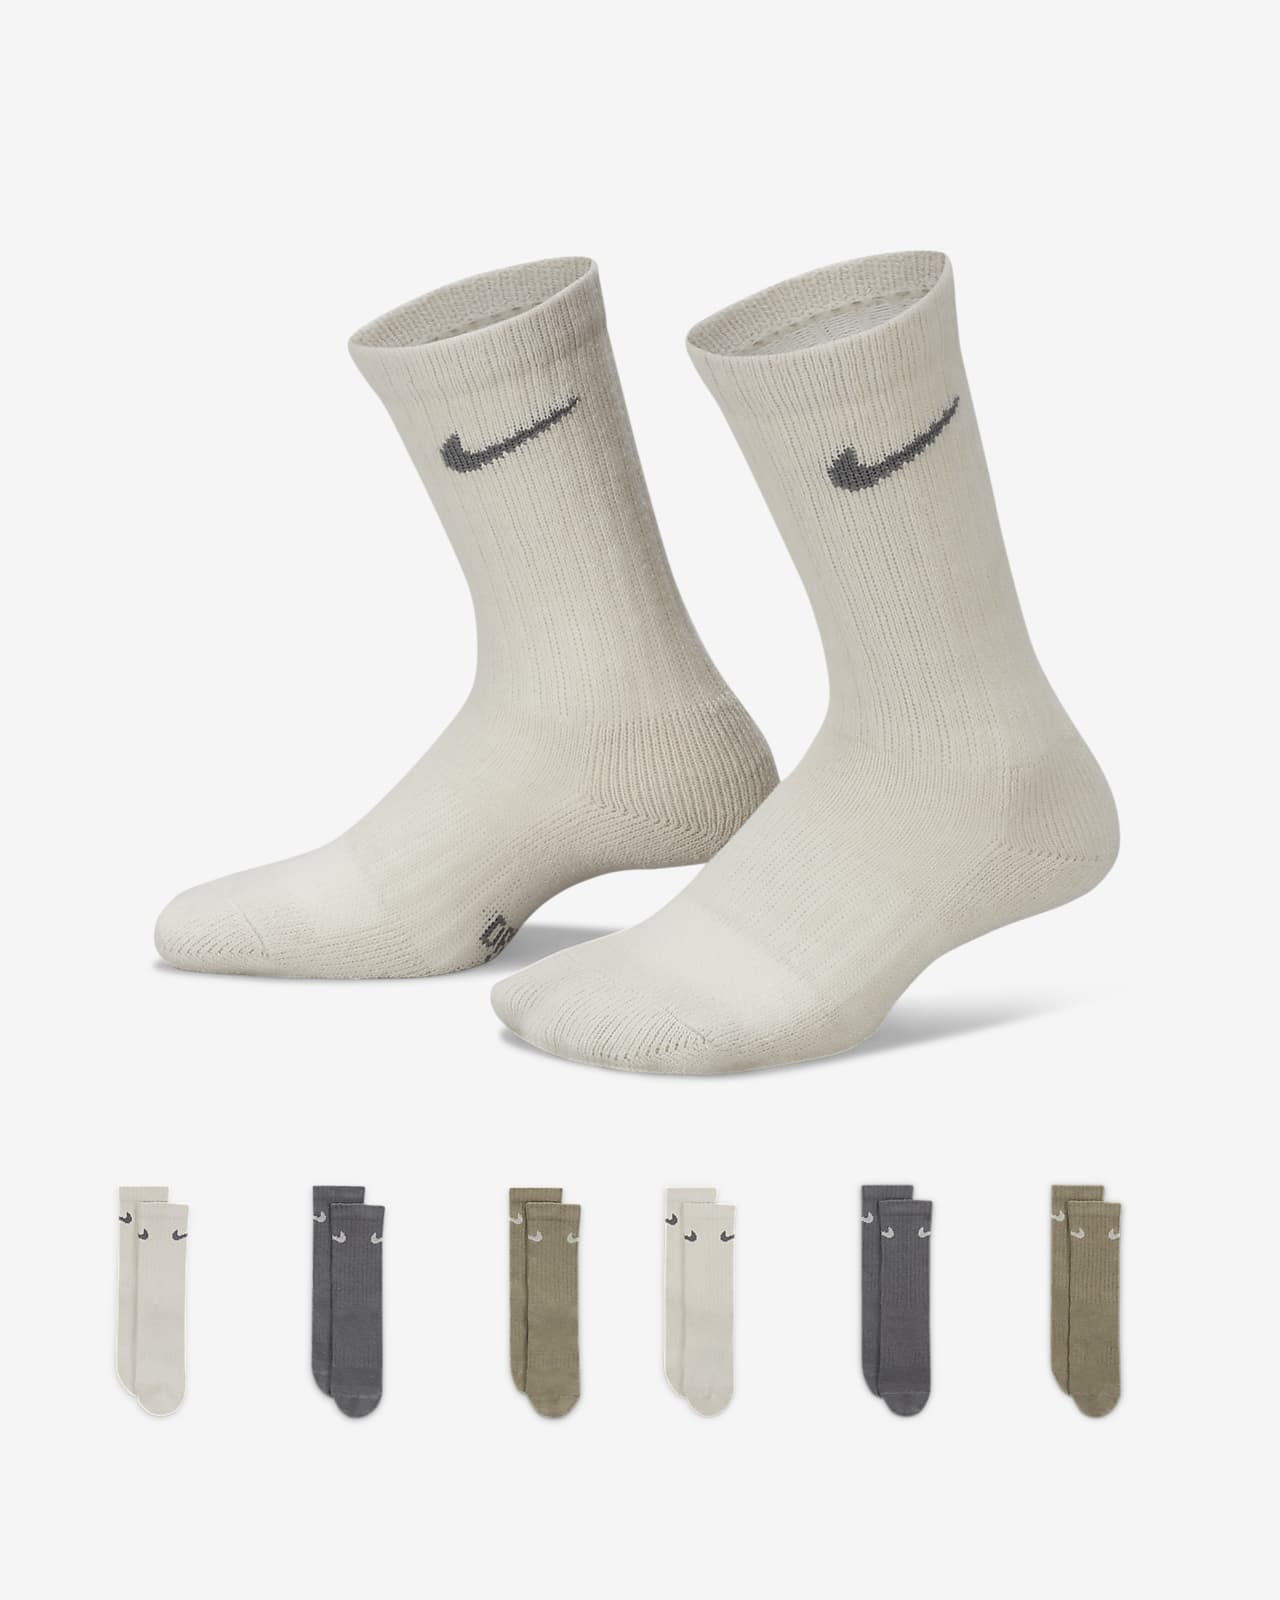 Nike Dri-FIT Little Kids' Crew Socks (6 Pairs).